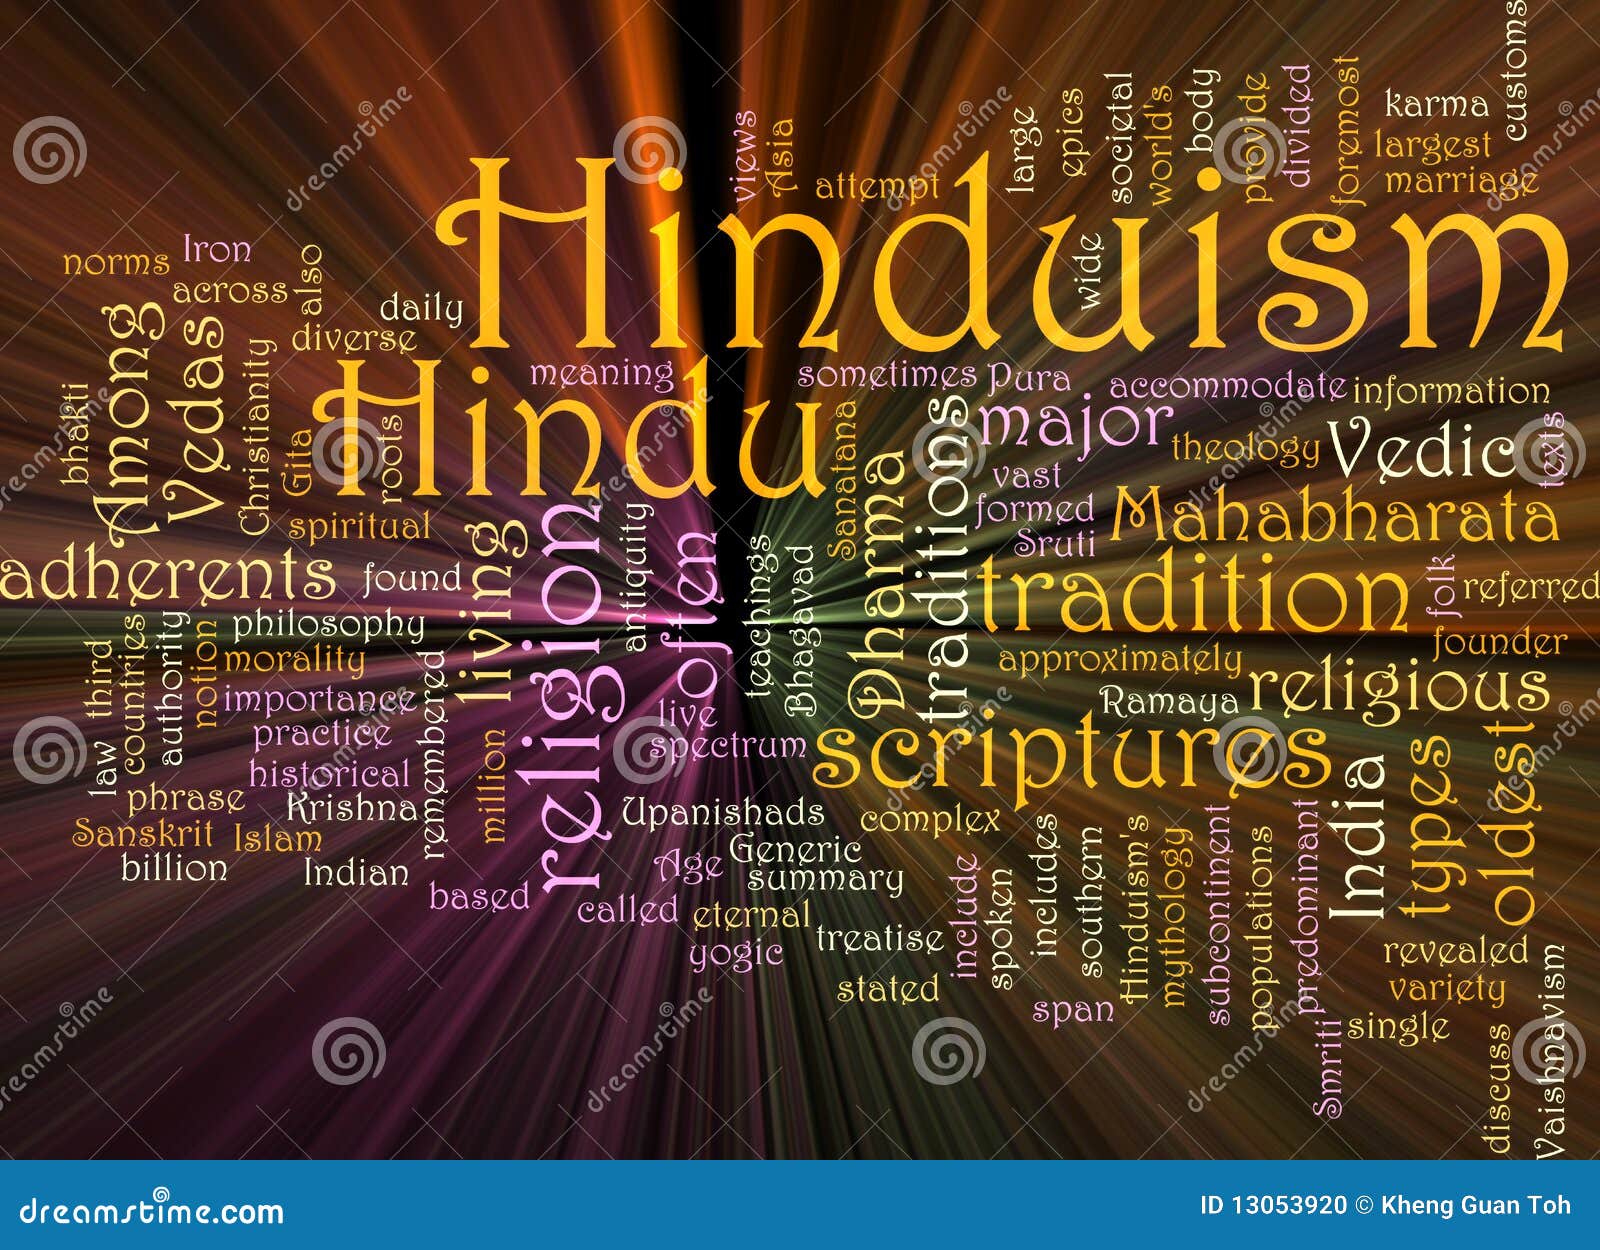 hinduism word cloud glowing